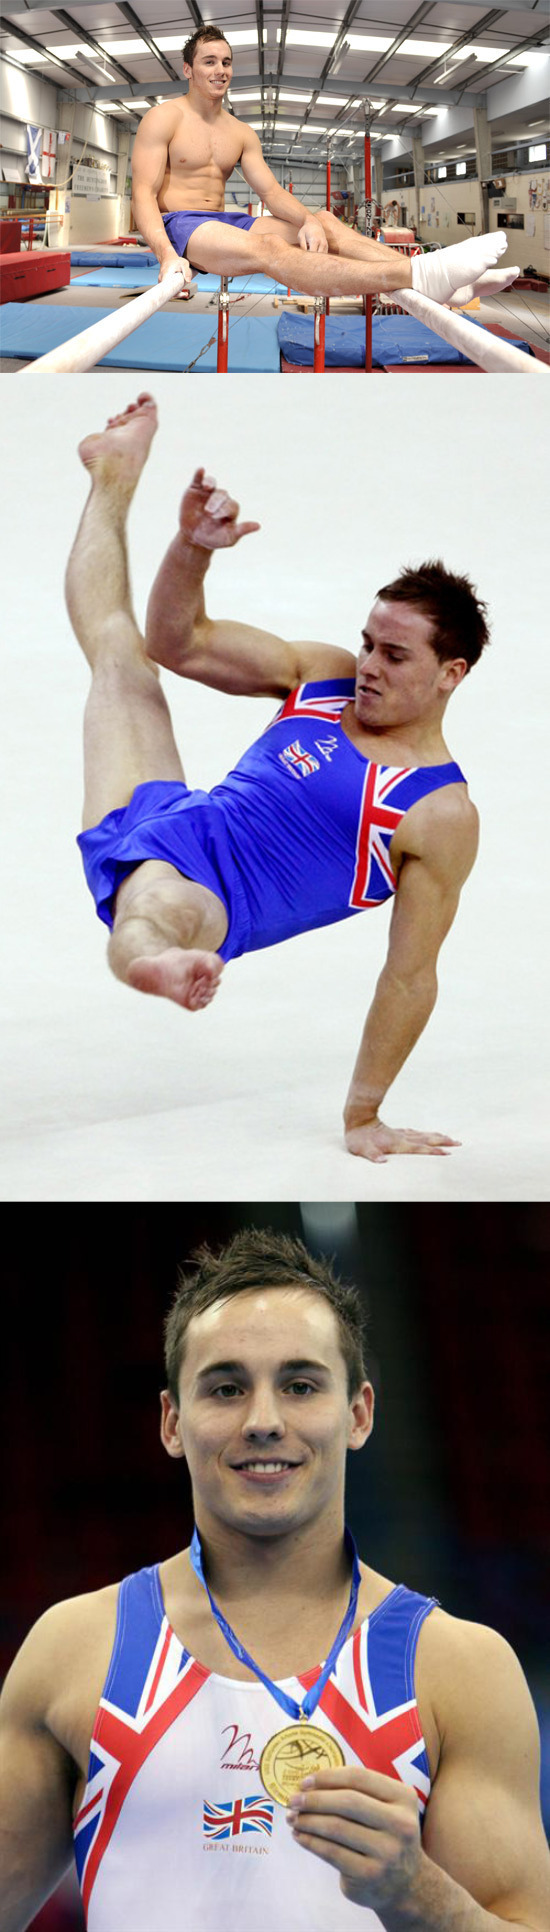 british gymnast dan keatings